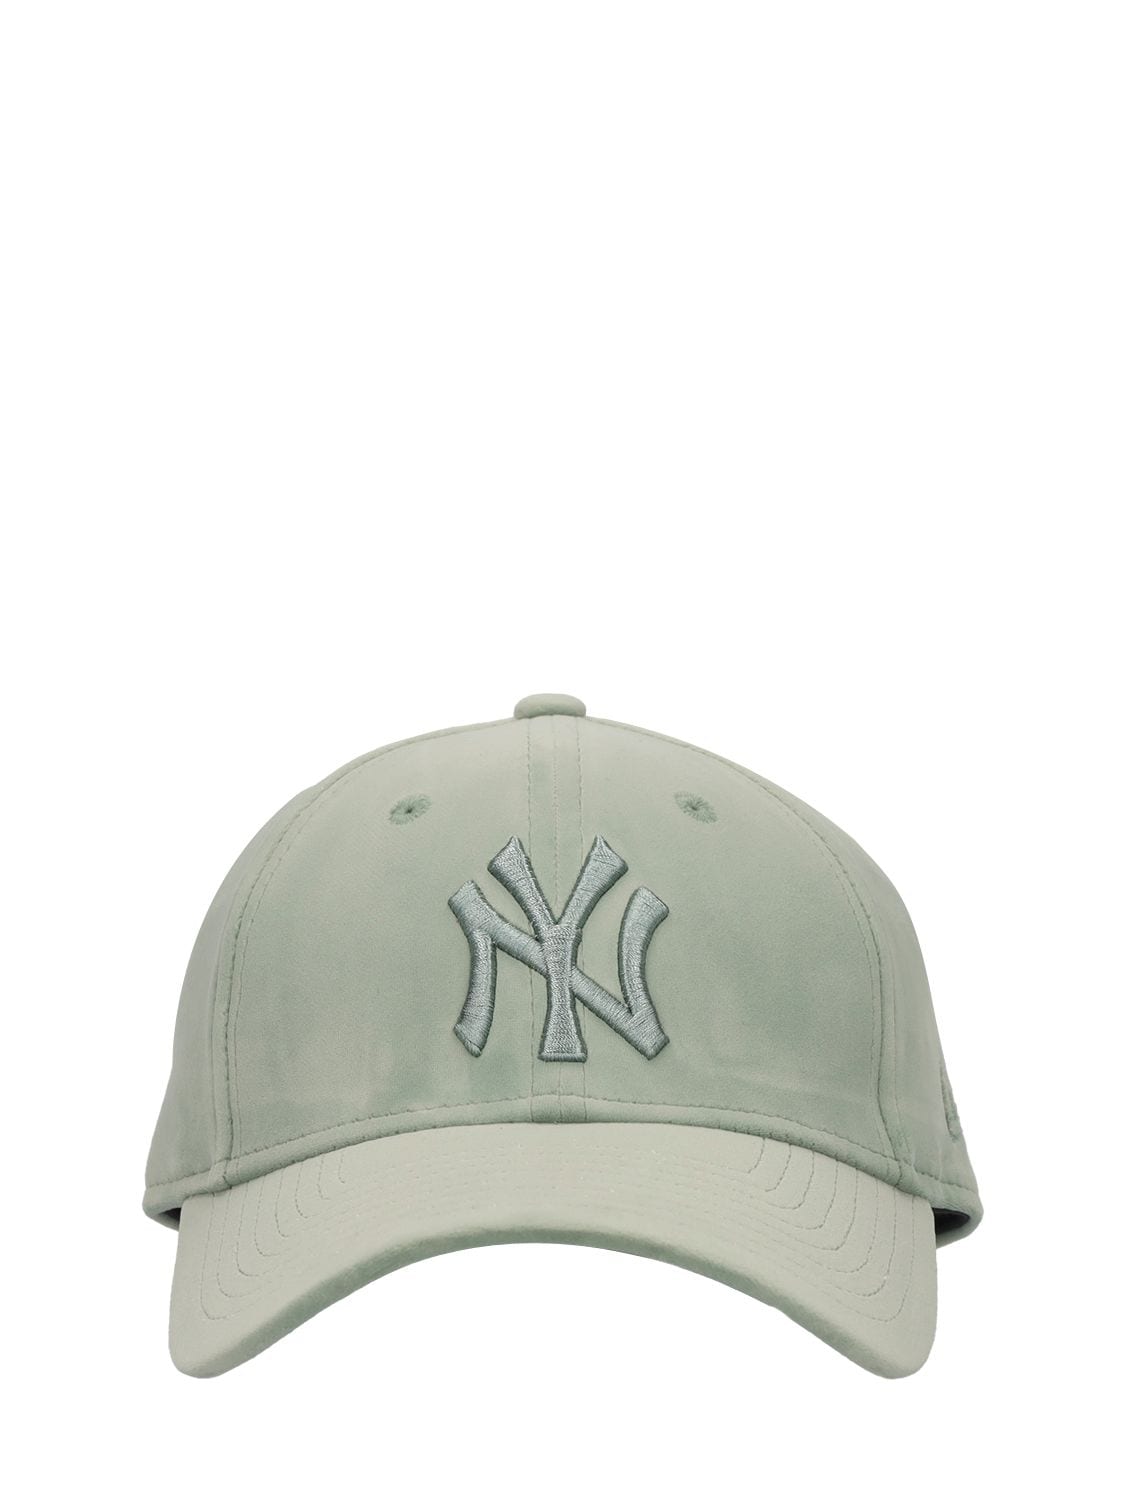 New Era 9forty Ny Yankees天鹅绒帽子 In Green